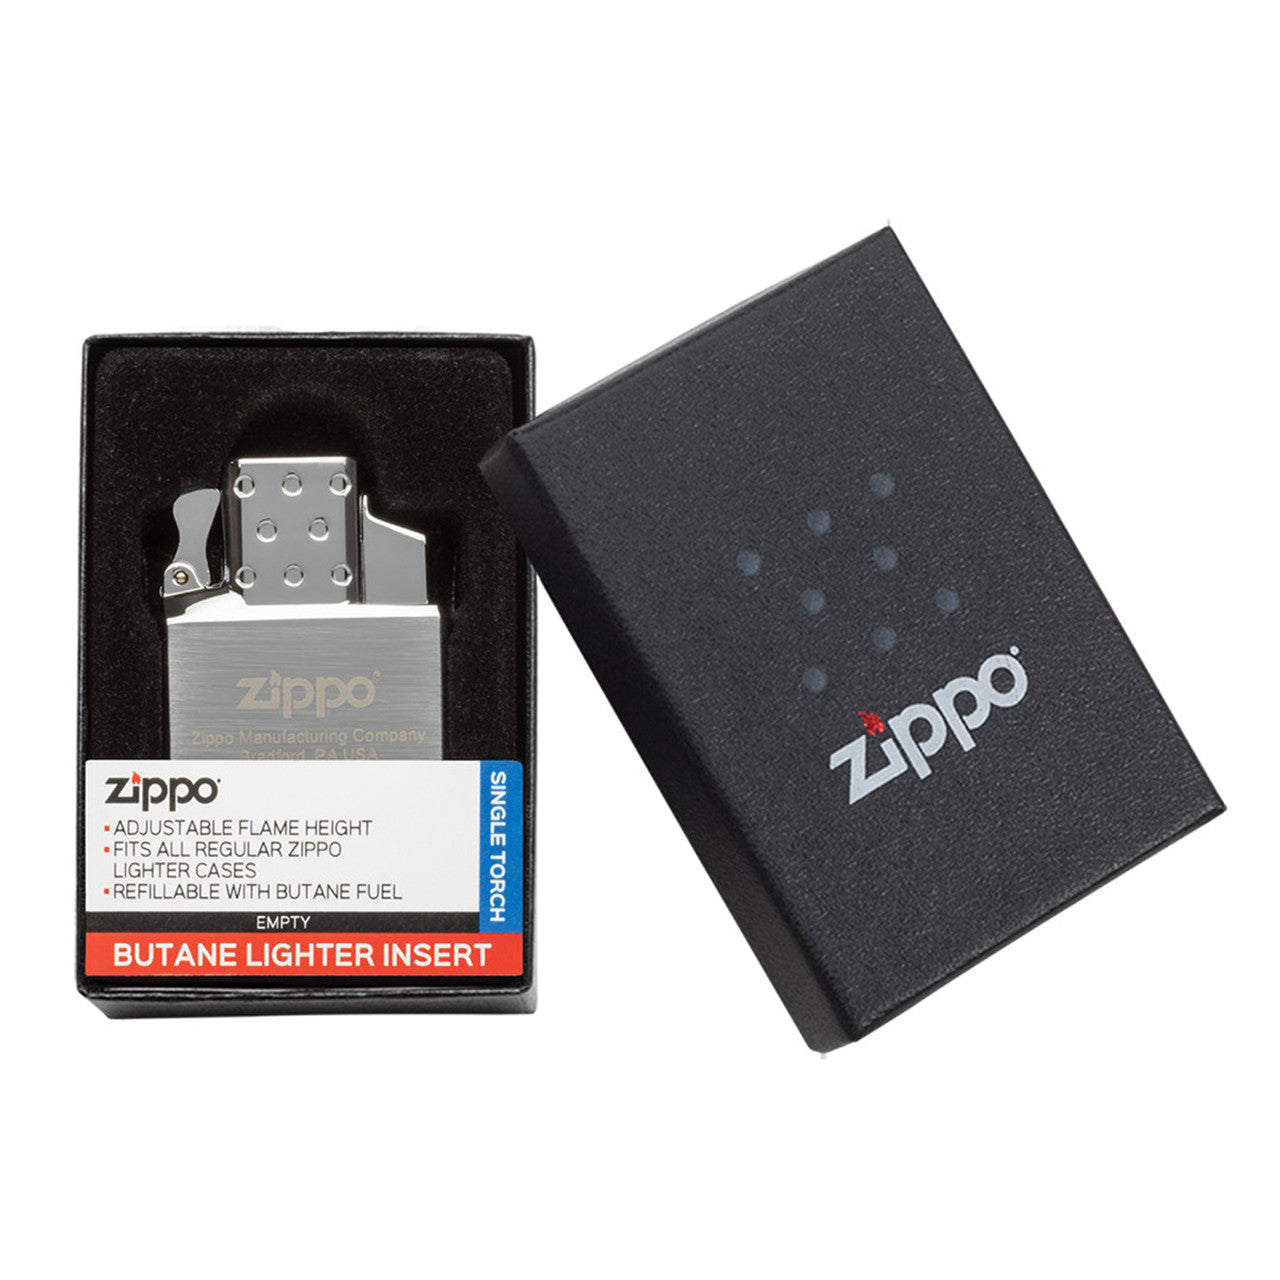 Zippo Butane Lighter Insert Single (Jet Lighter Insert Single Flame)